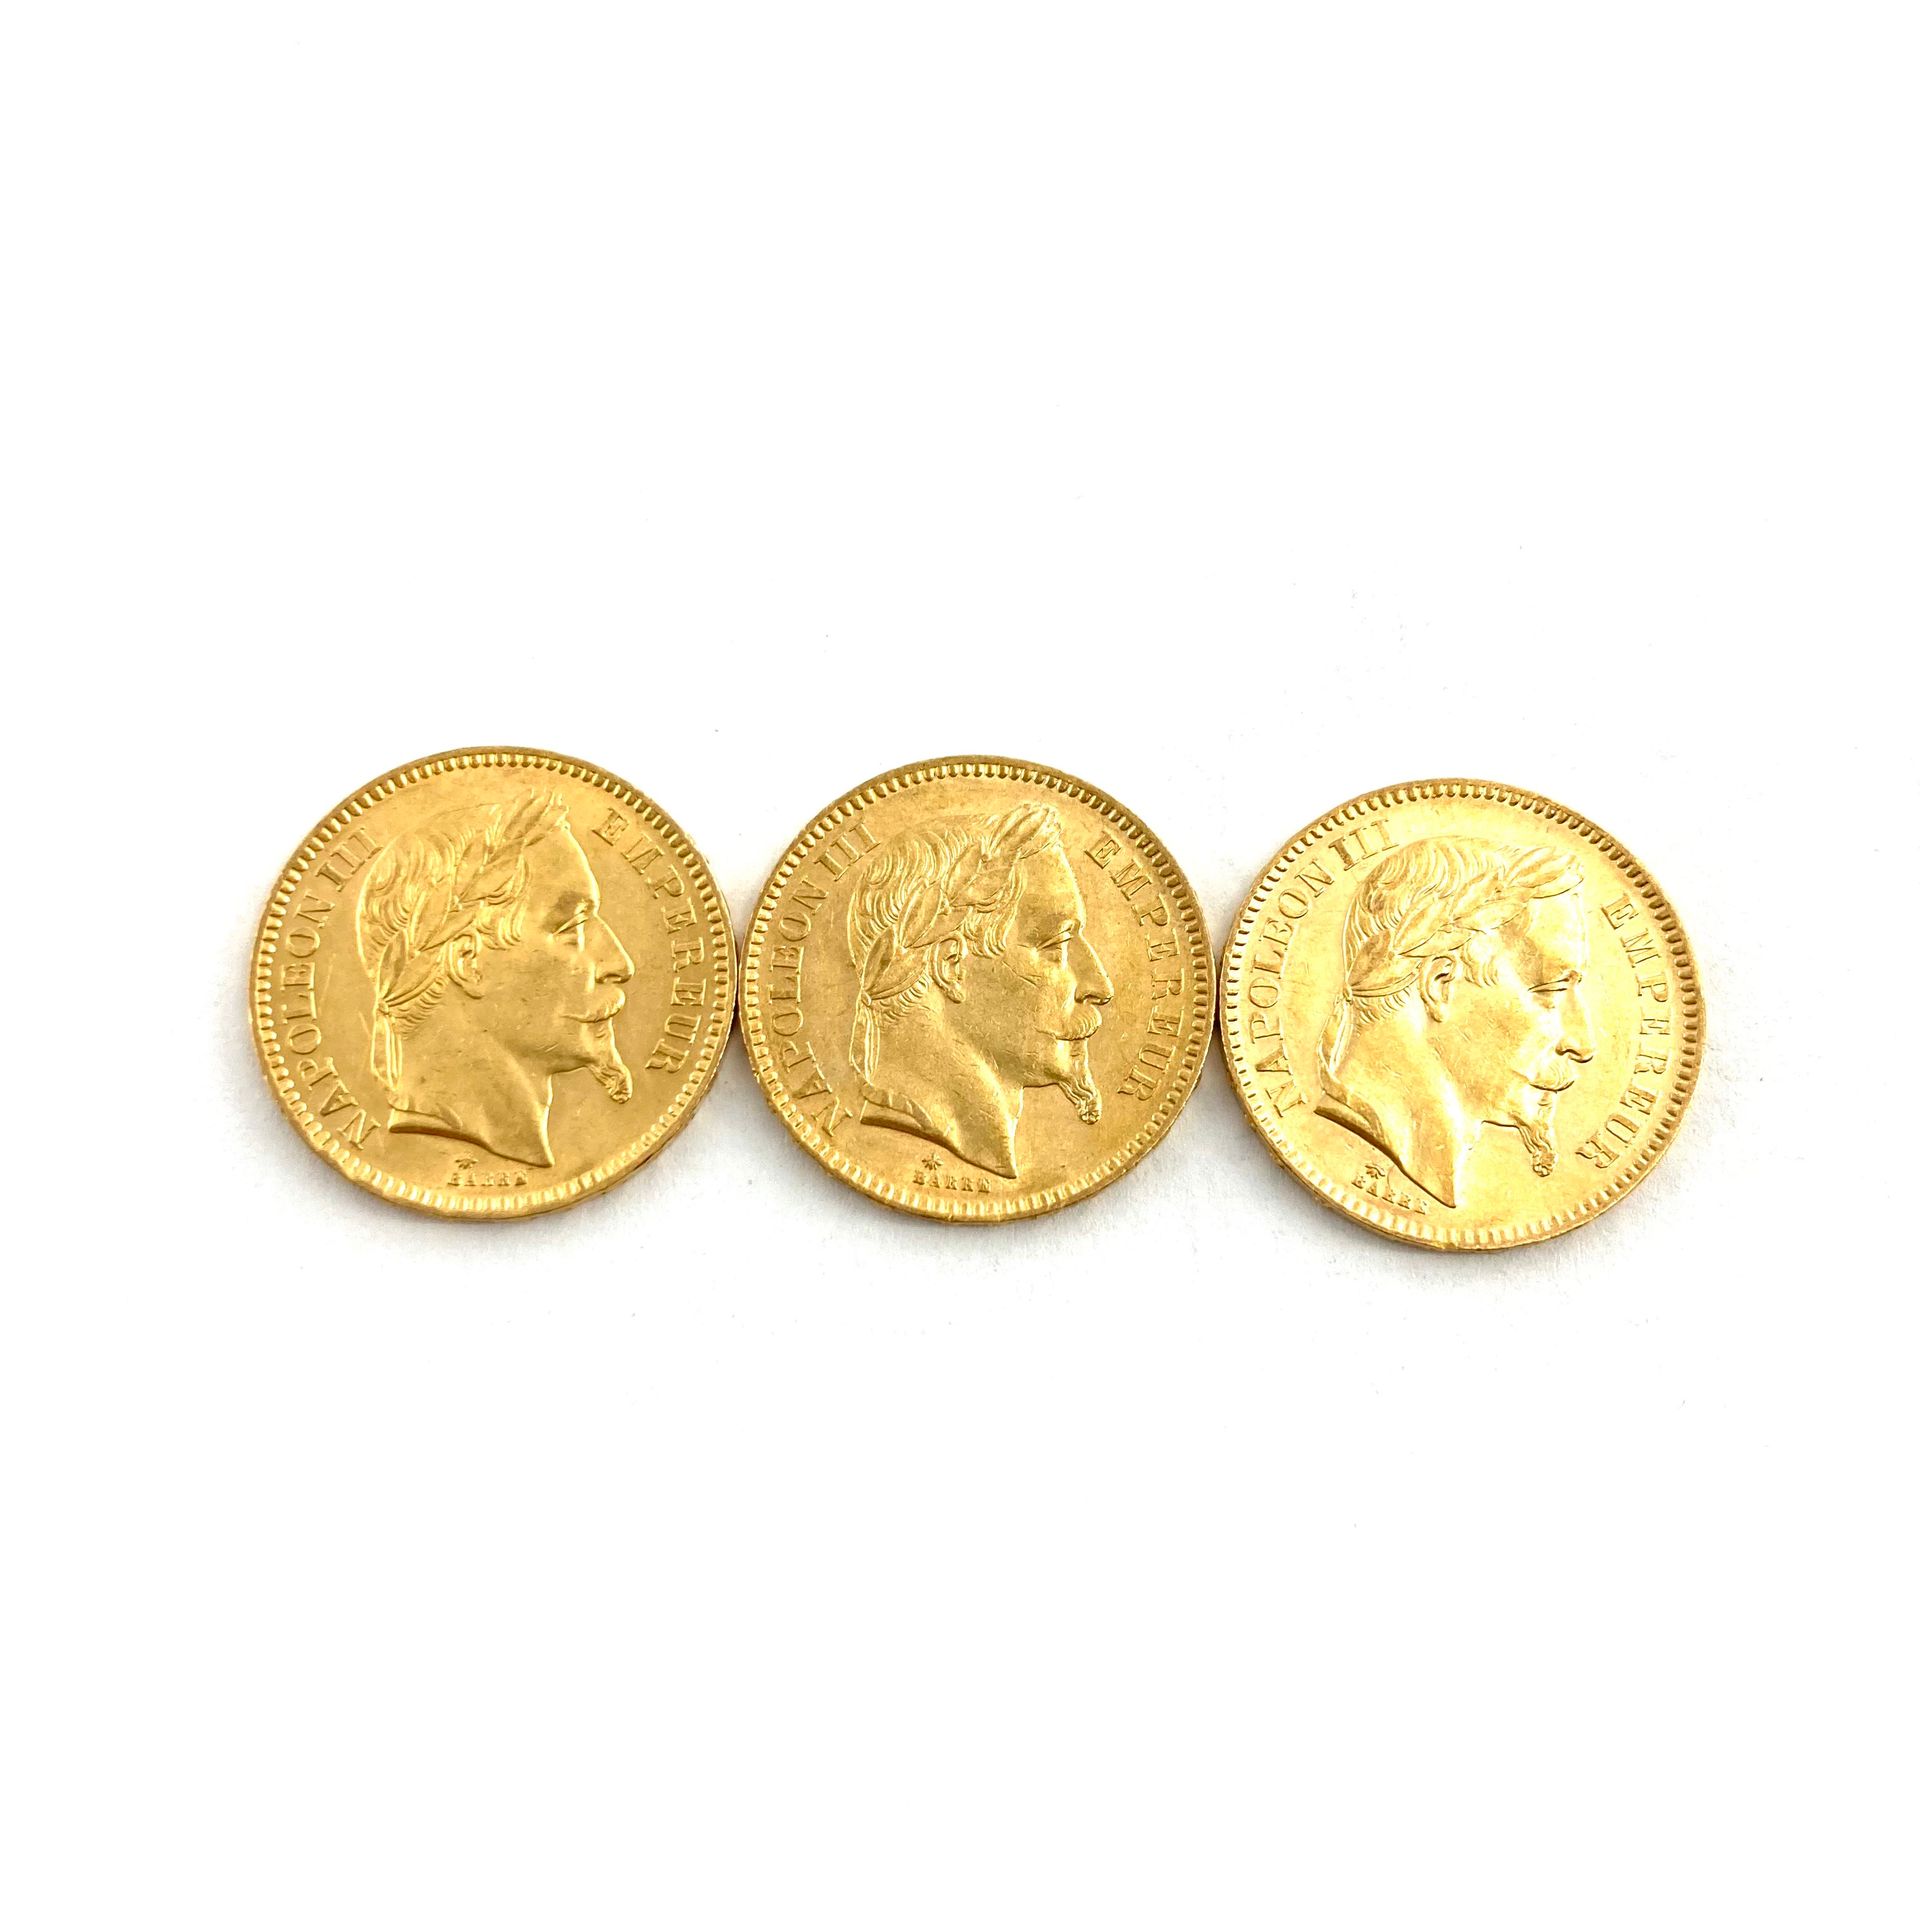 Null 三枚20法郎金币拿破仑三世头像。

1865 A (x3)



A : 巴黎研讨会。



重量：19.35克。